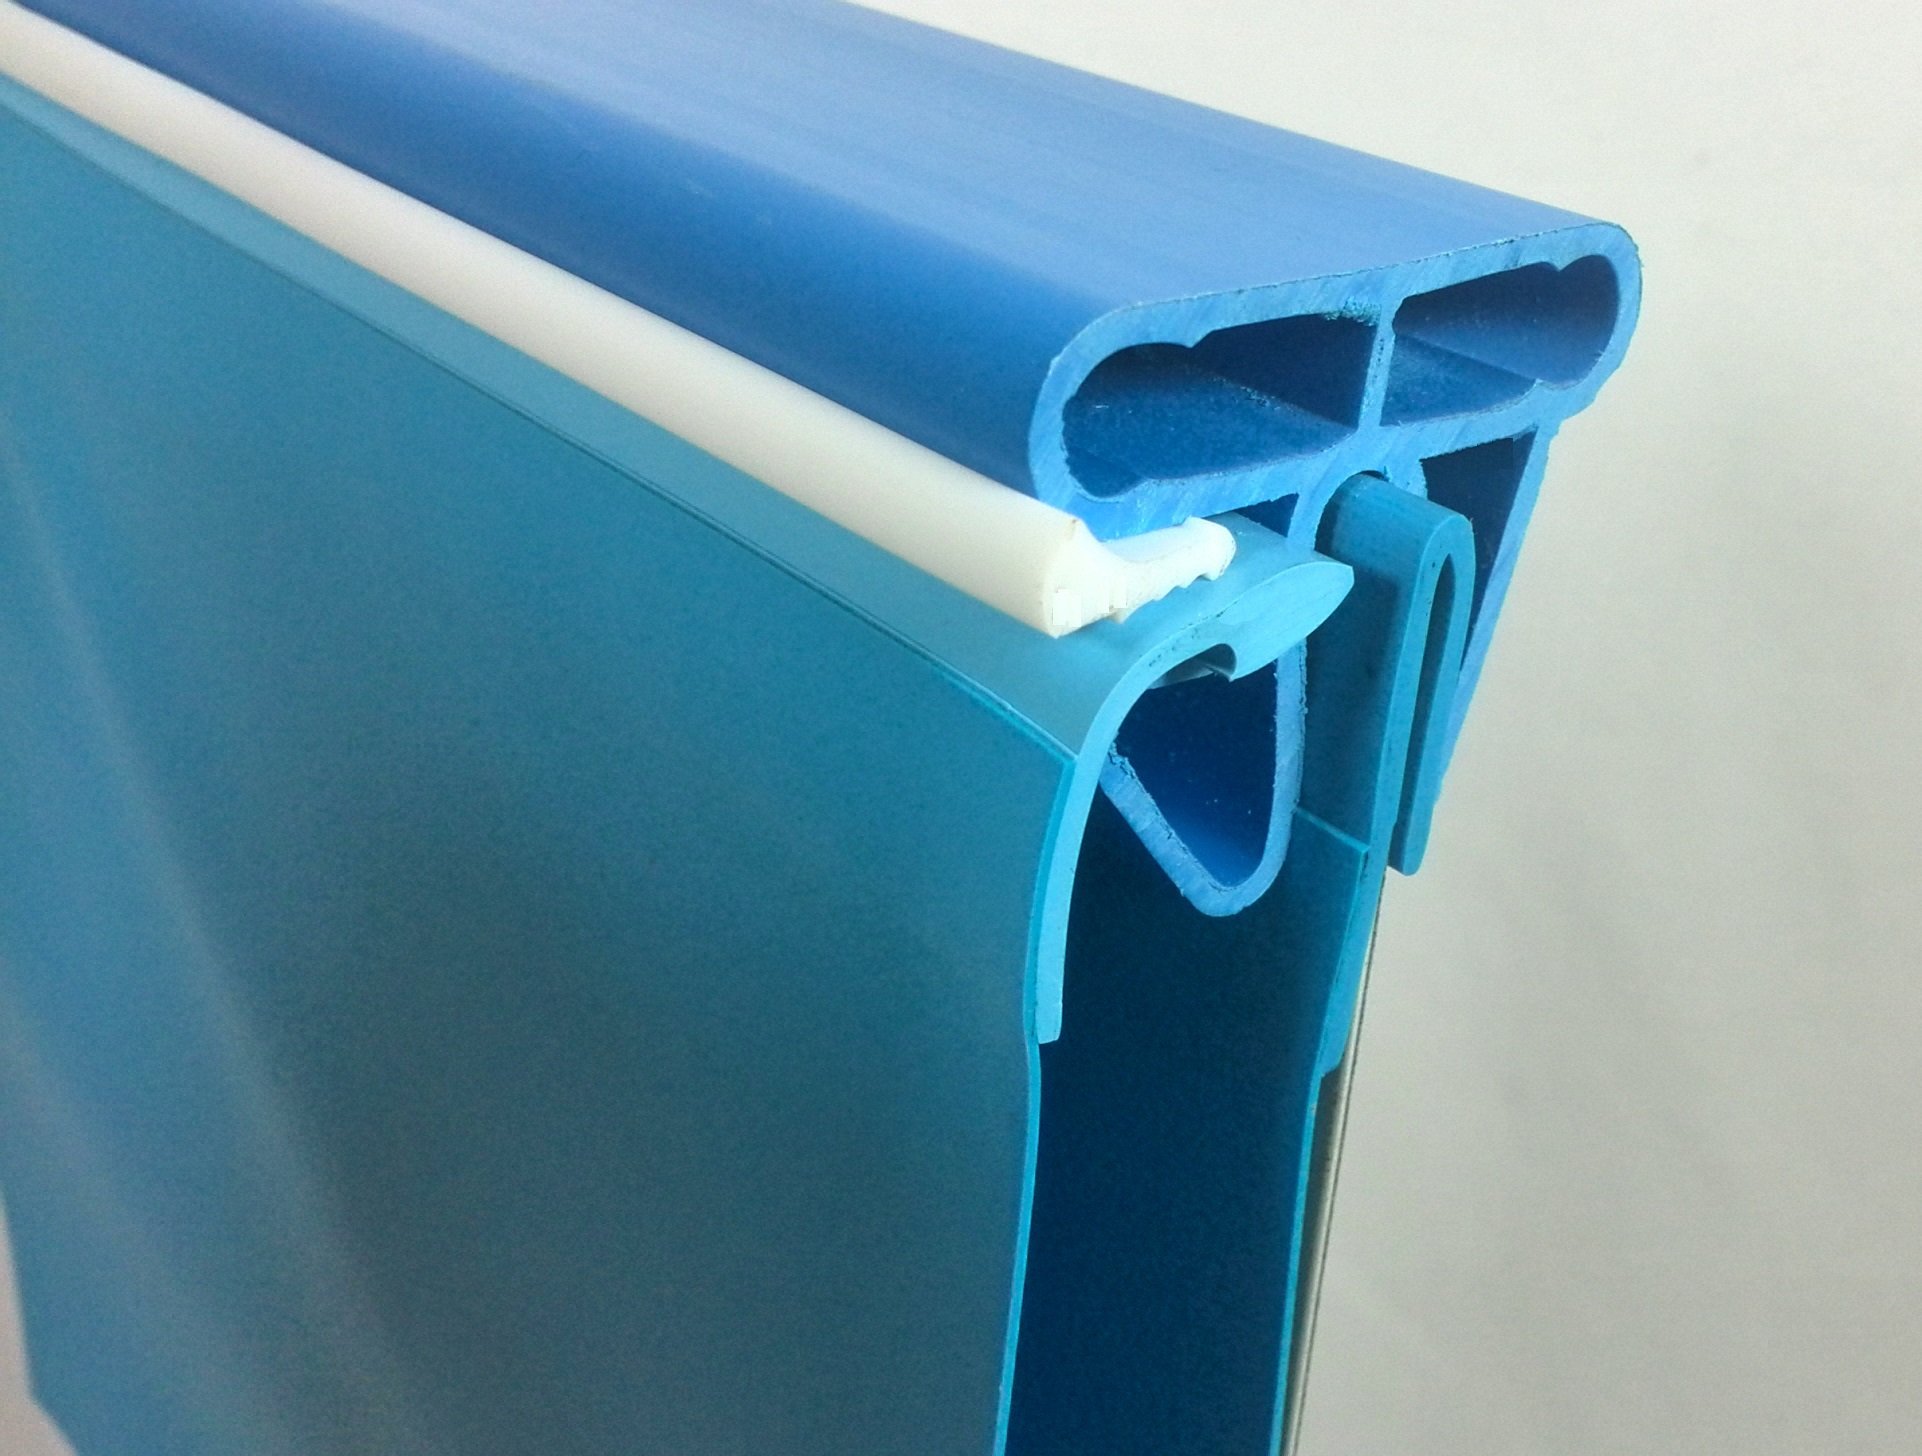 Stahlwandpool rund Exklusiv 200x120 cm, Stahl 0,6 mm weiß, Folie 0,6 mm blau, Einhängebiese